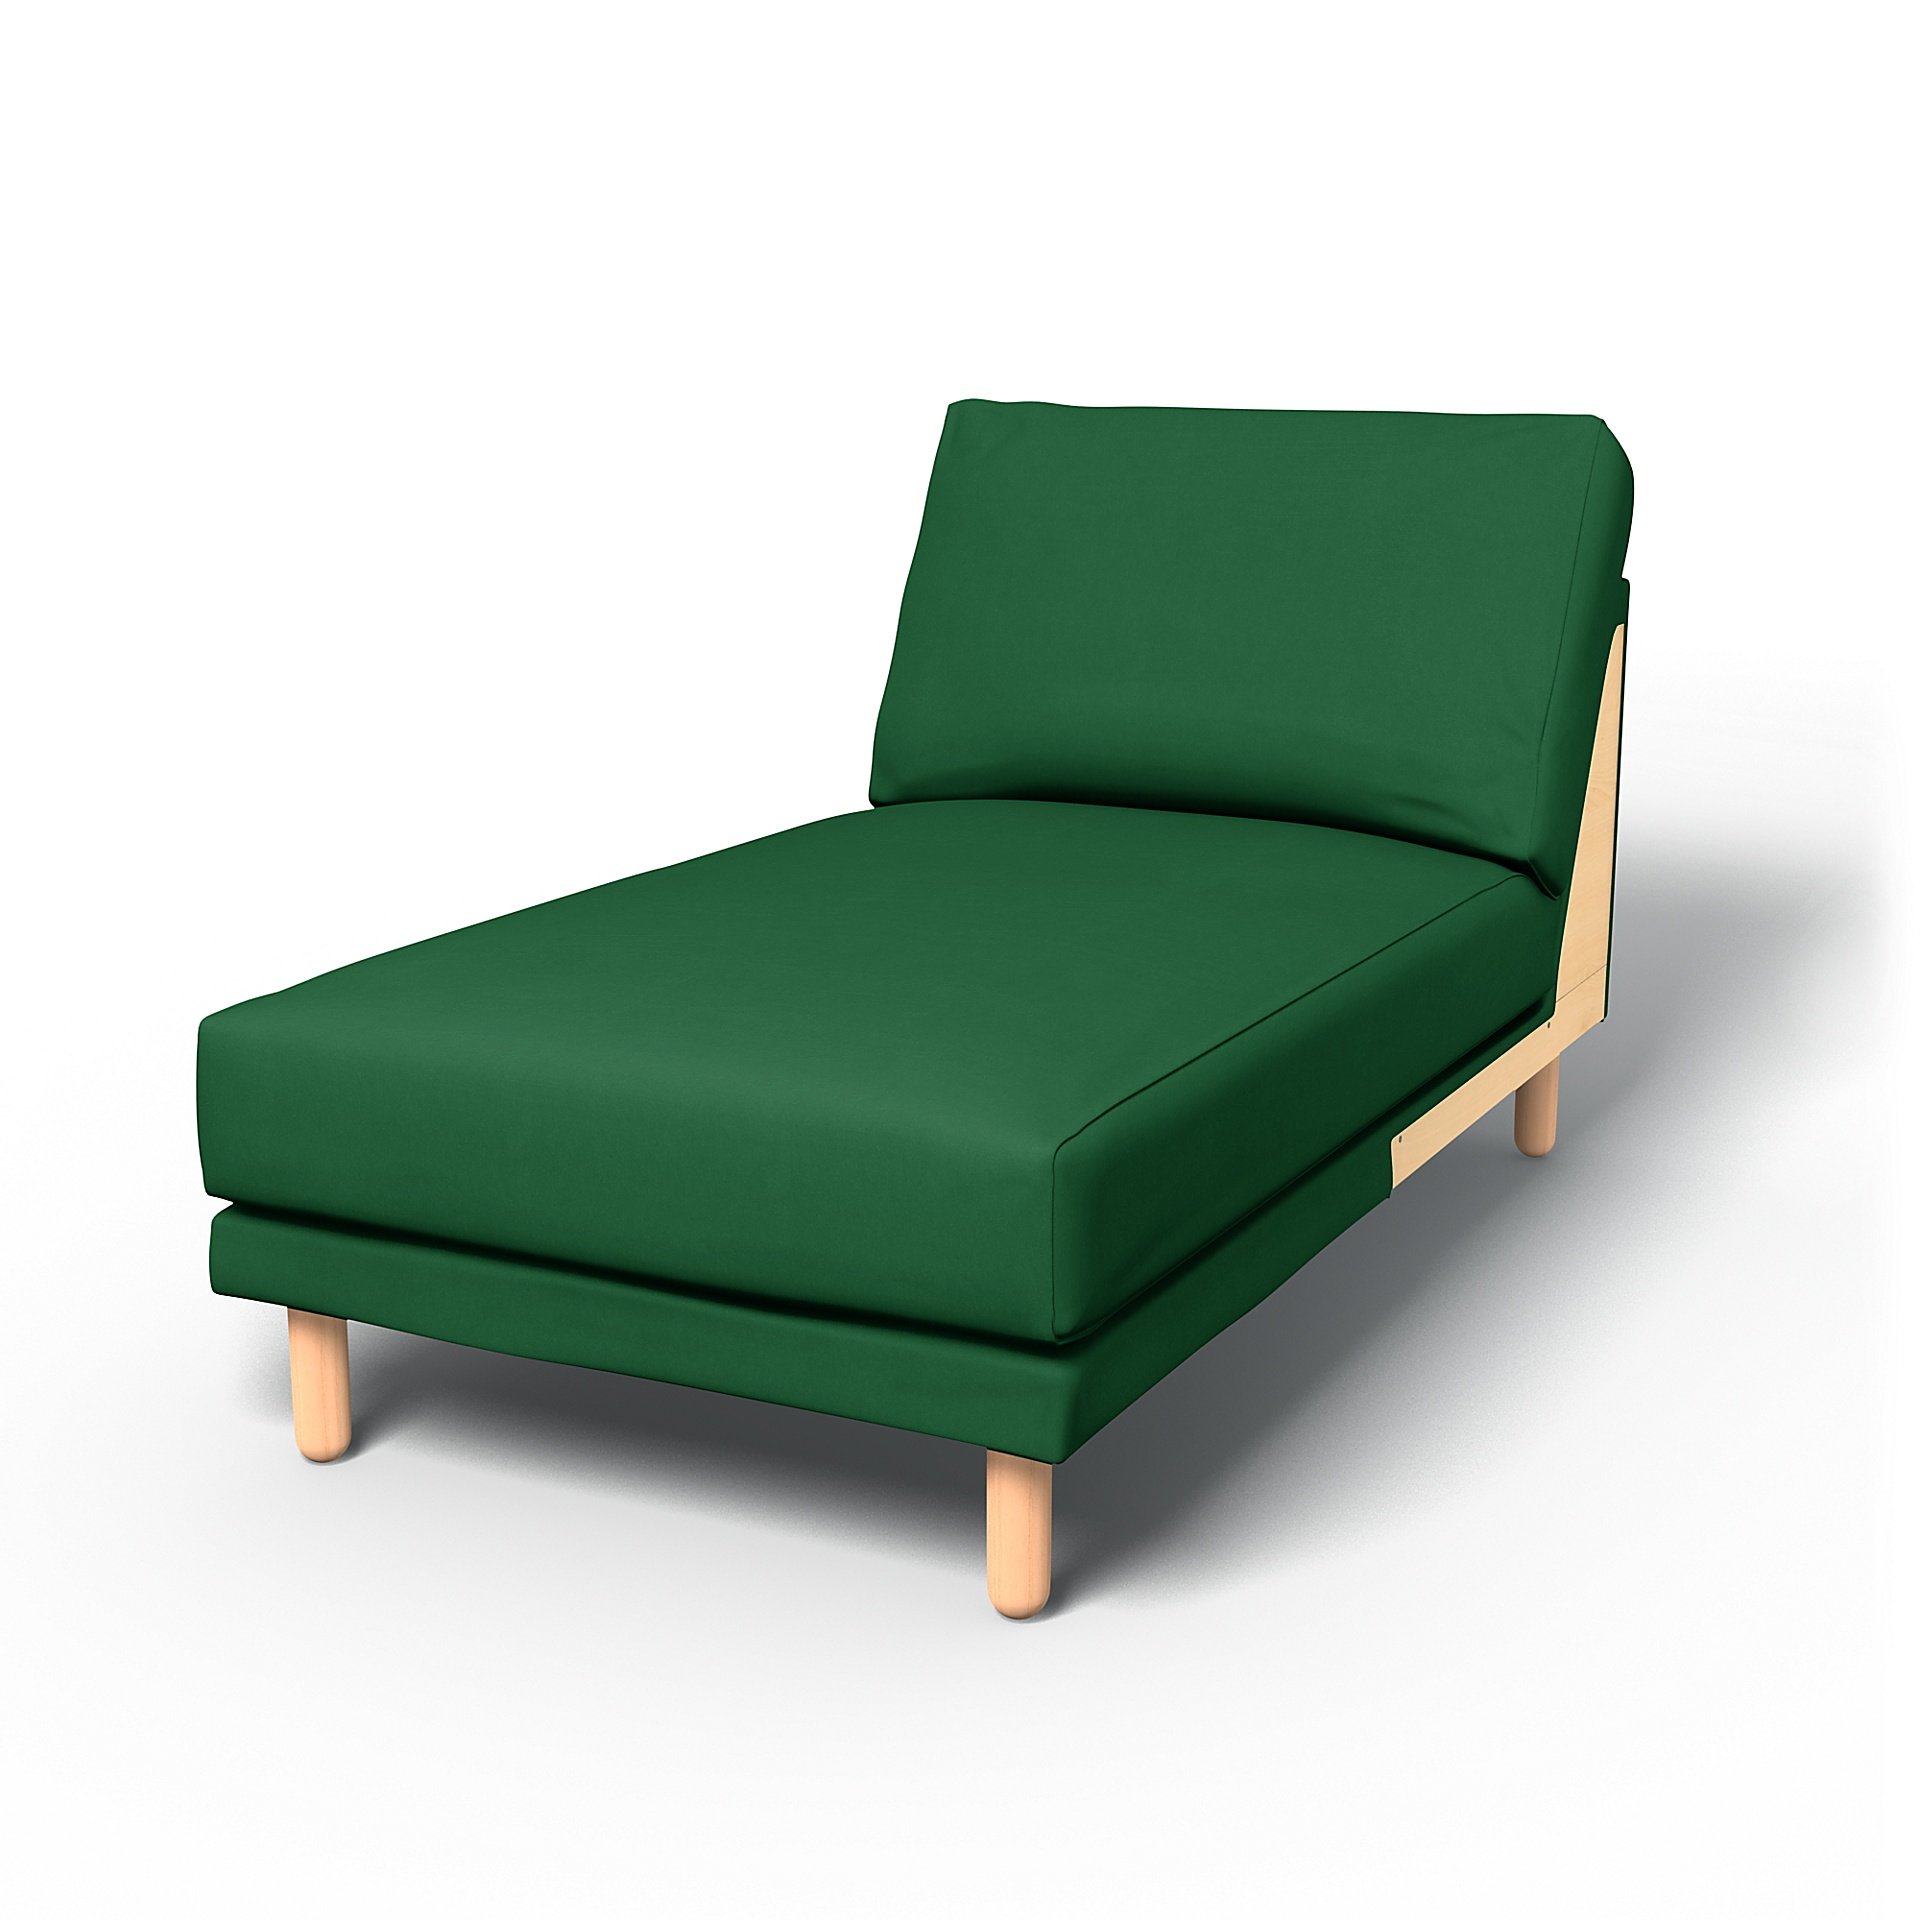 IKEA - Norsborg Chaise Longue Add-on Unit Cover, Abundant Green, Velvet - Bemz